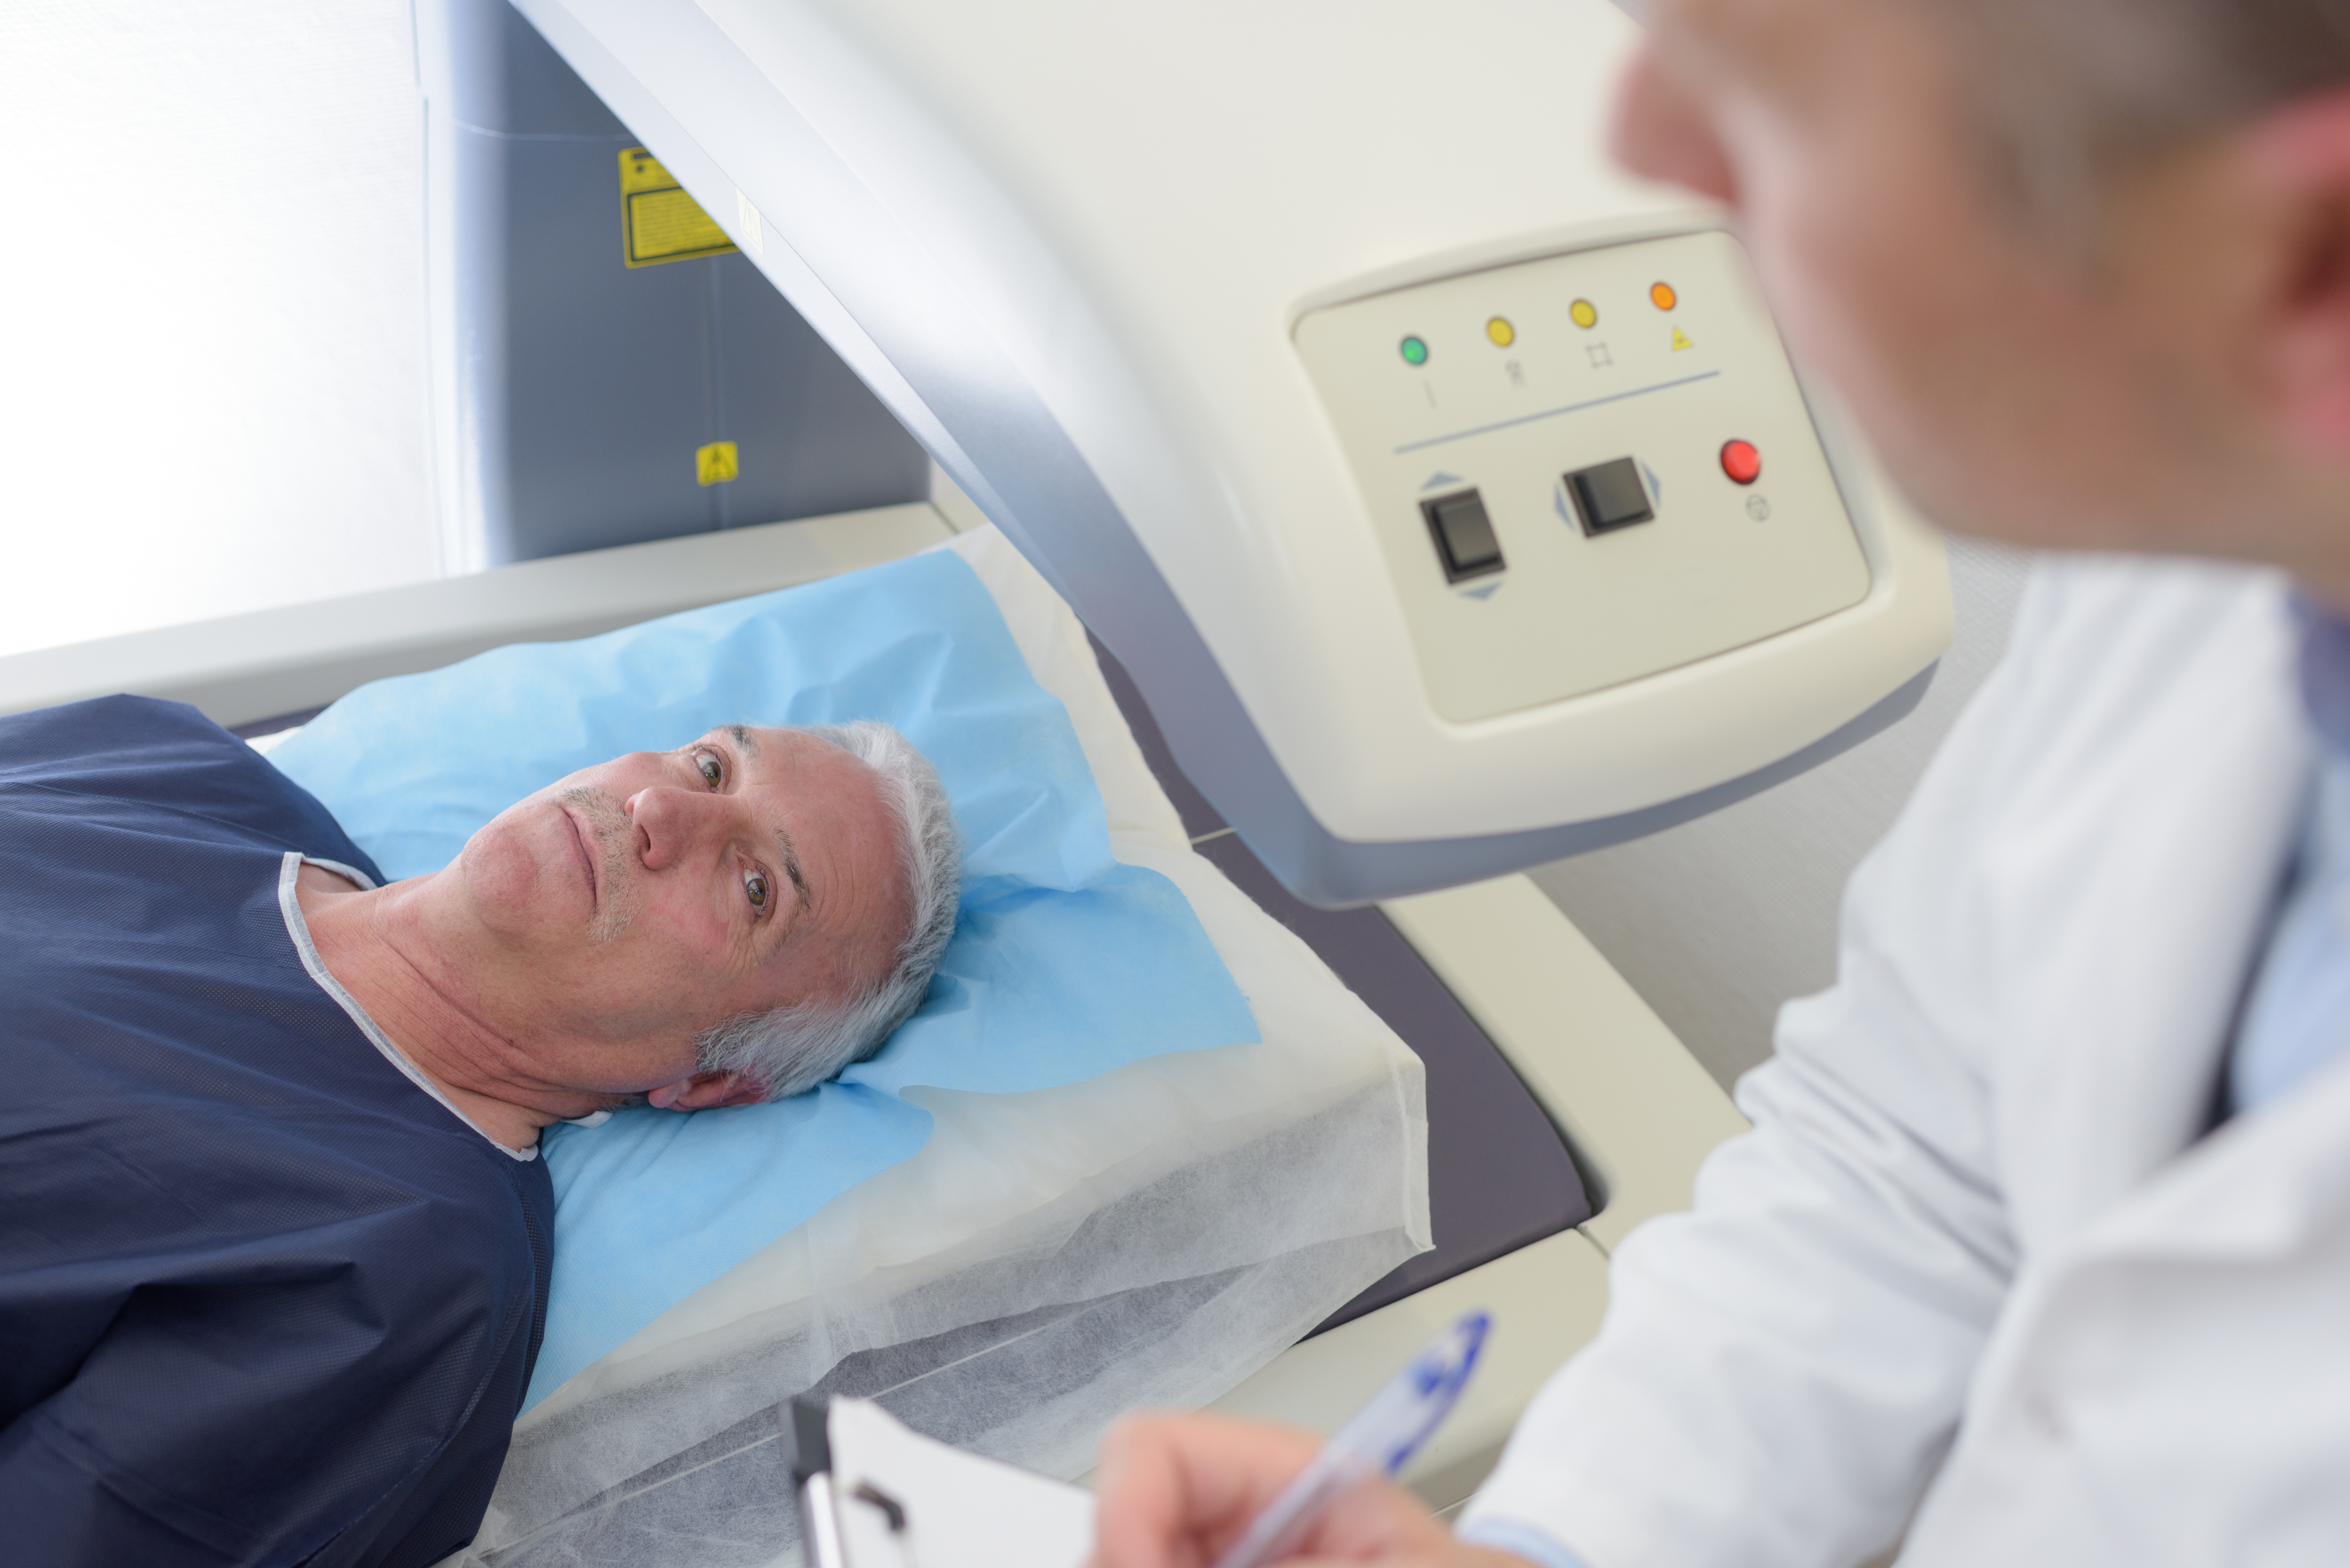 La PET/IRM, un type d’imagerie qui permet d’obtenir simultanément des données morphologiques, fonctionnelles et métaboliques, permet de classer avec précision les patients atteints d'un cancer de la prostate et permet d'éviter les biopsies inutiles (Visuel Adobe Stock 212395935)